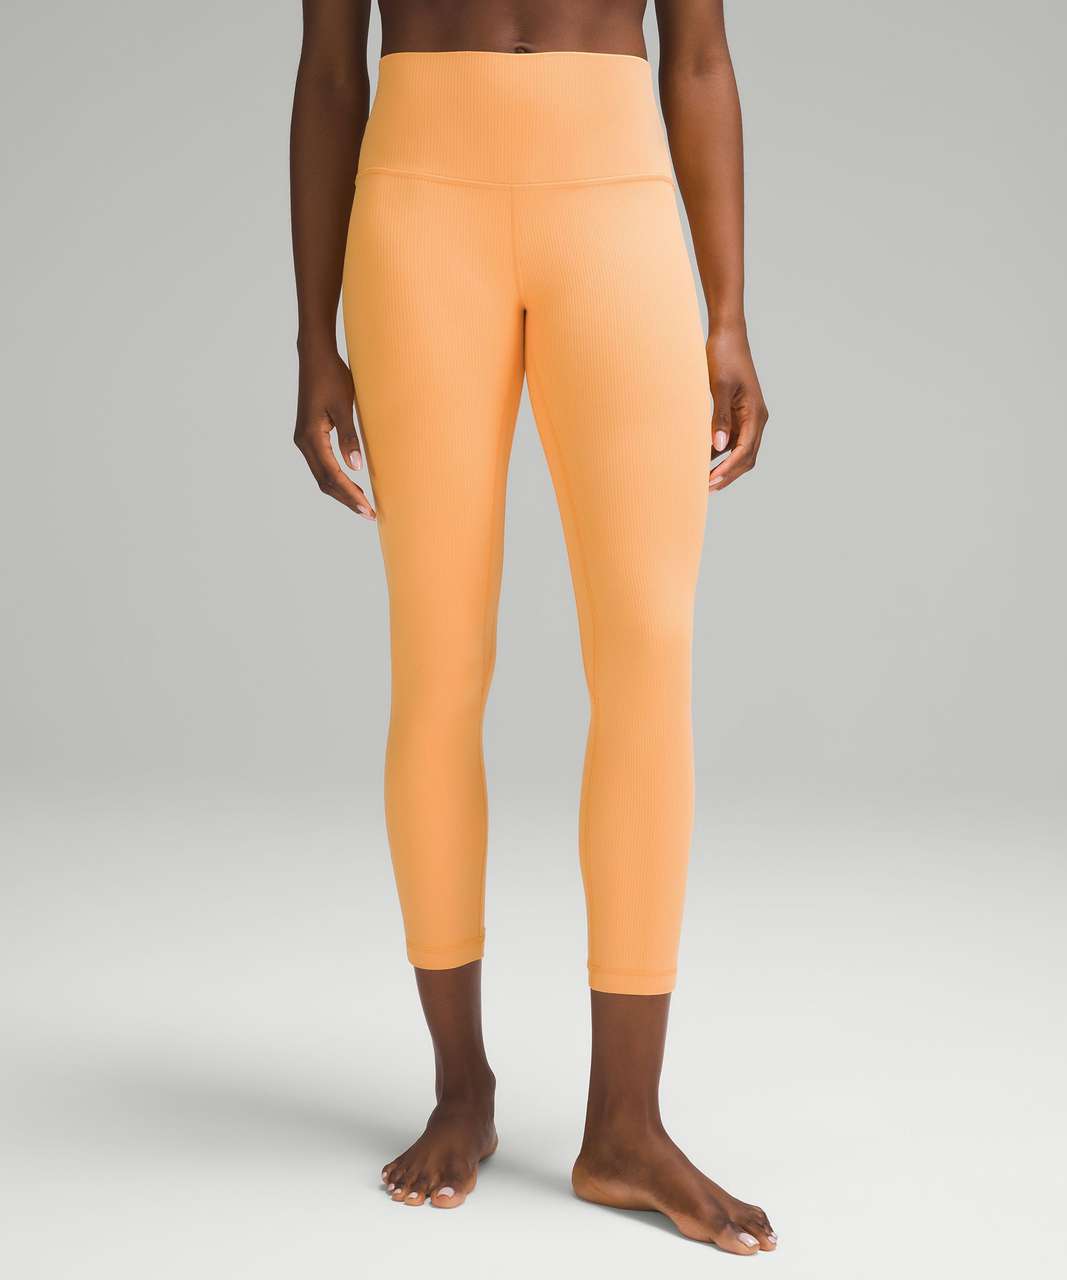 NWT Lululemon Align Pant Size 4 Orange Soda Nulu 25 Double Lined